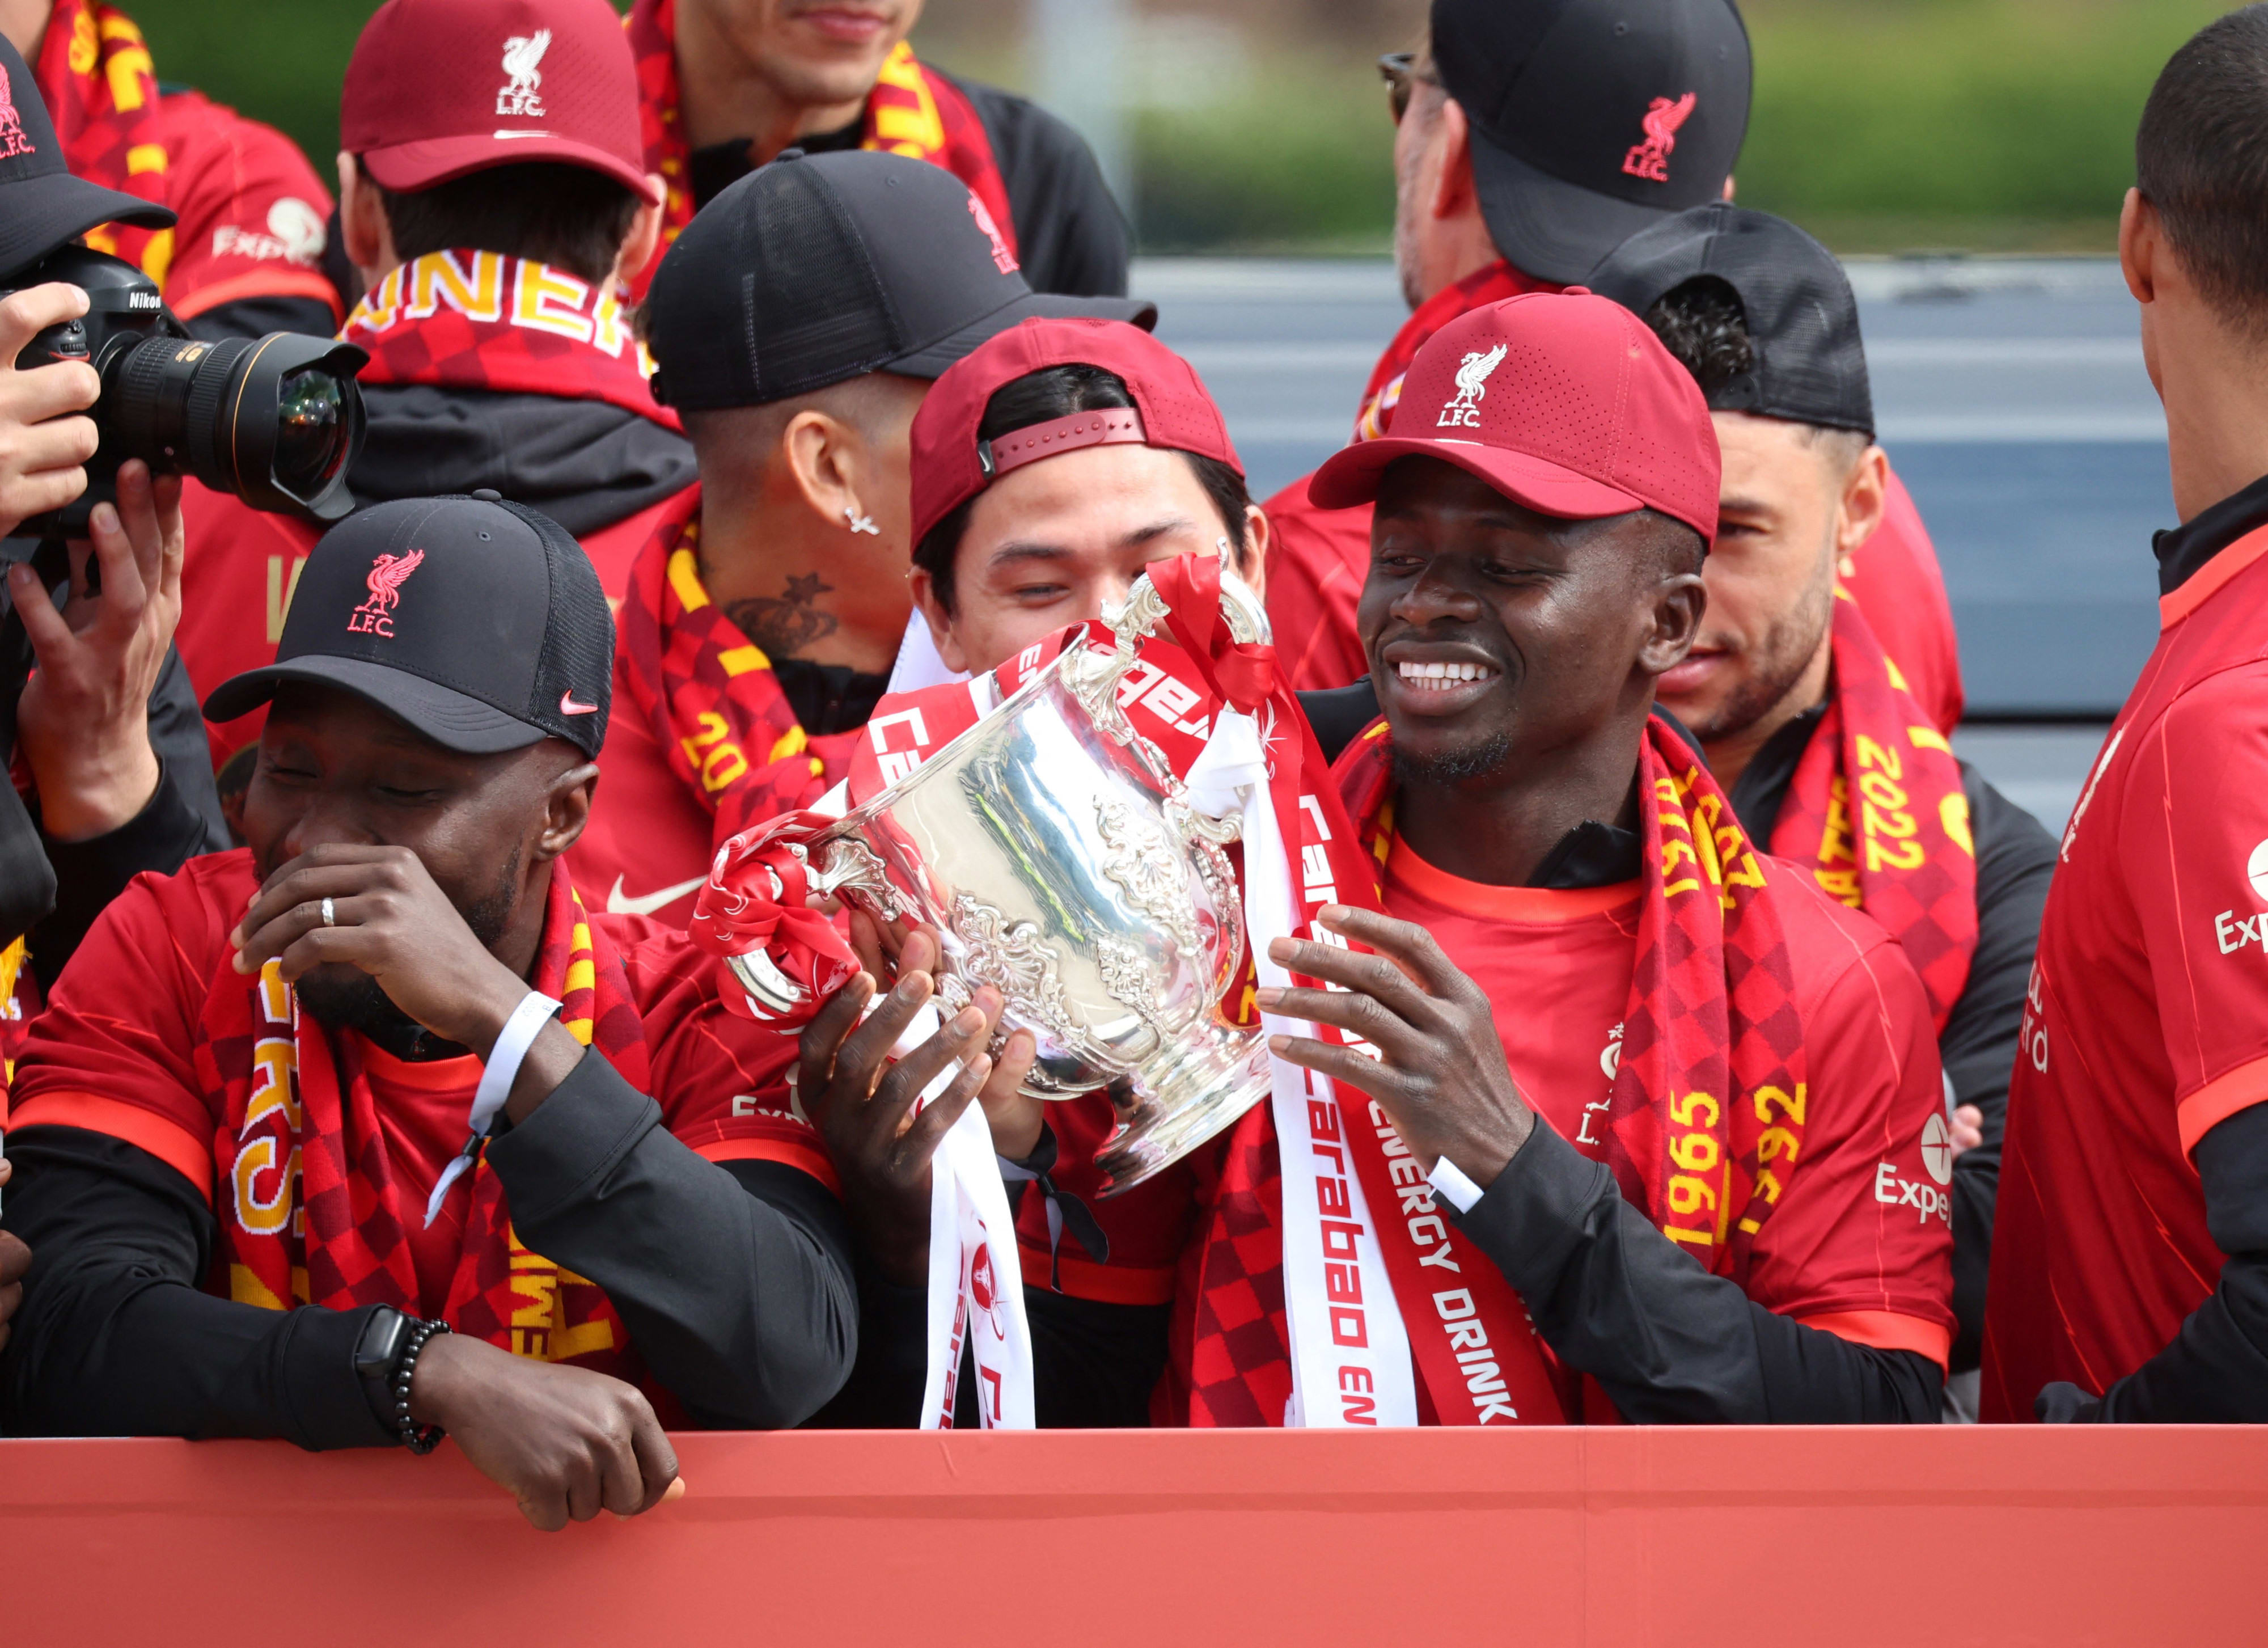 סאדיו מאנה שחקן ליברפול מחזיק את גביע הליגה באוטובוס הפתוח